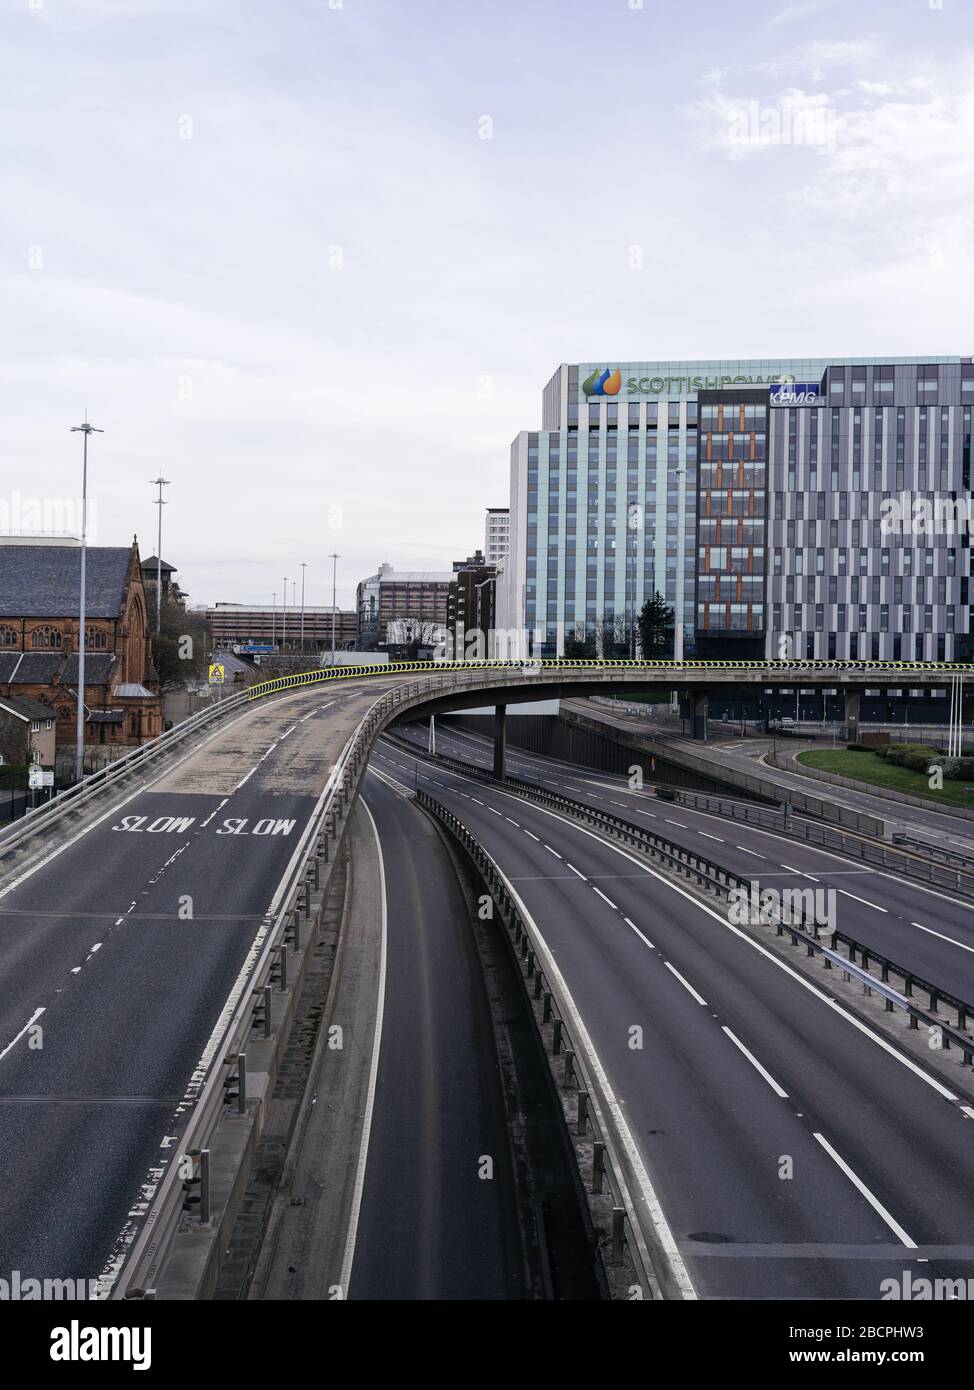 Autoroute M8 vide près du pont de Kingston à Charing Cross, Glasgow pendant le verrouillage pandémique du Coronavirus au Royaume-Uni. Banque D'Images